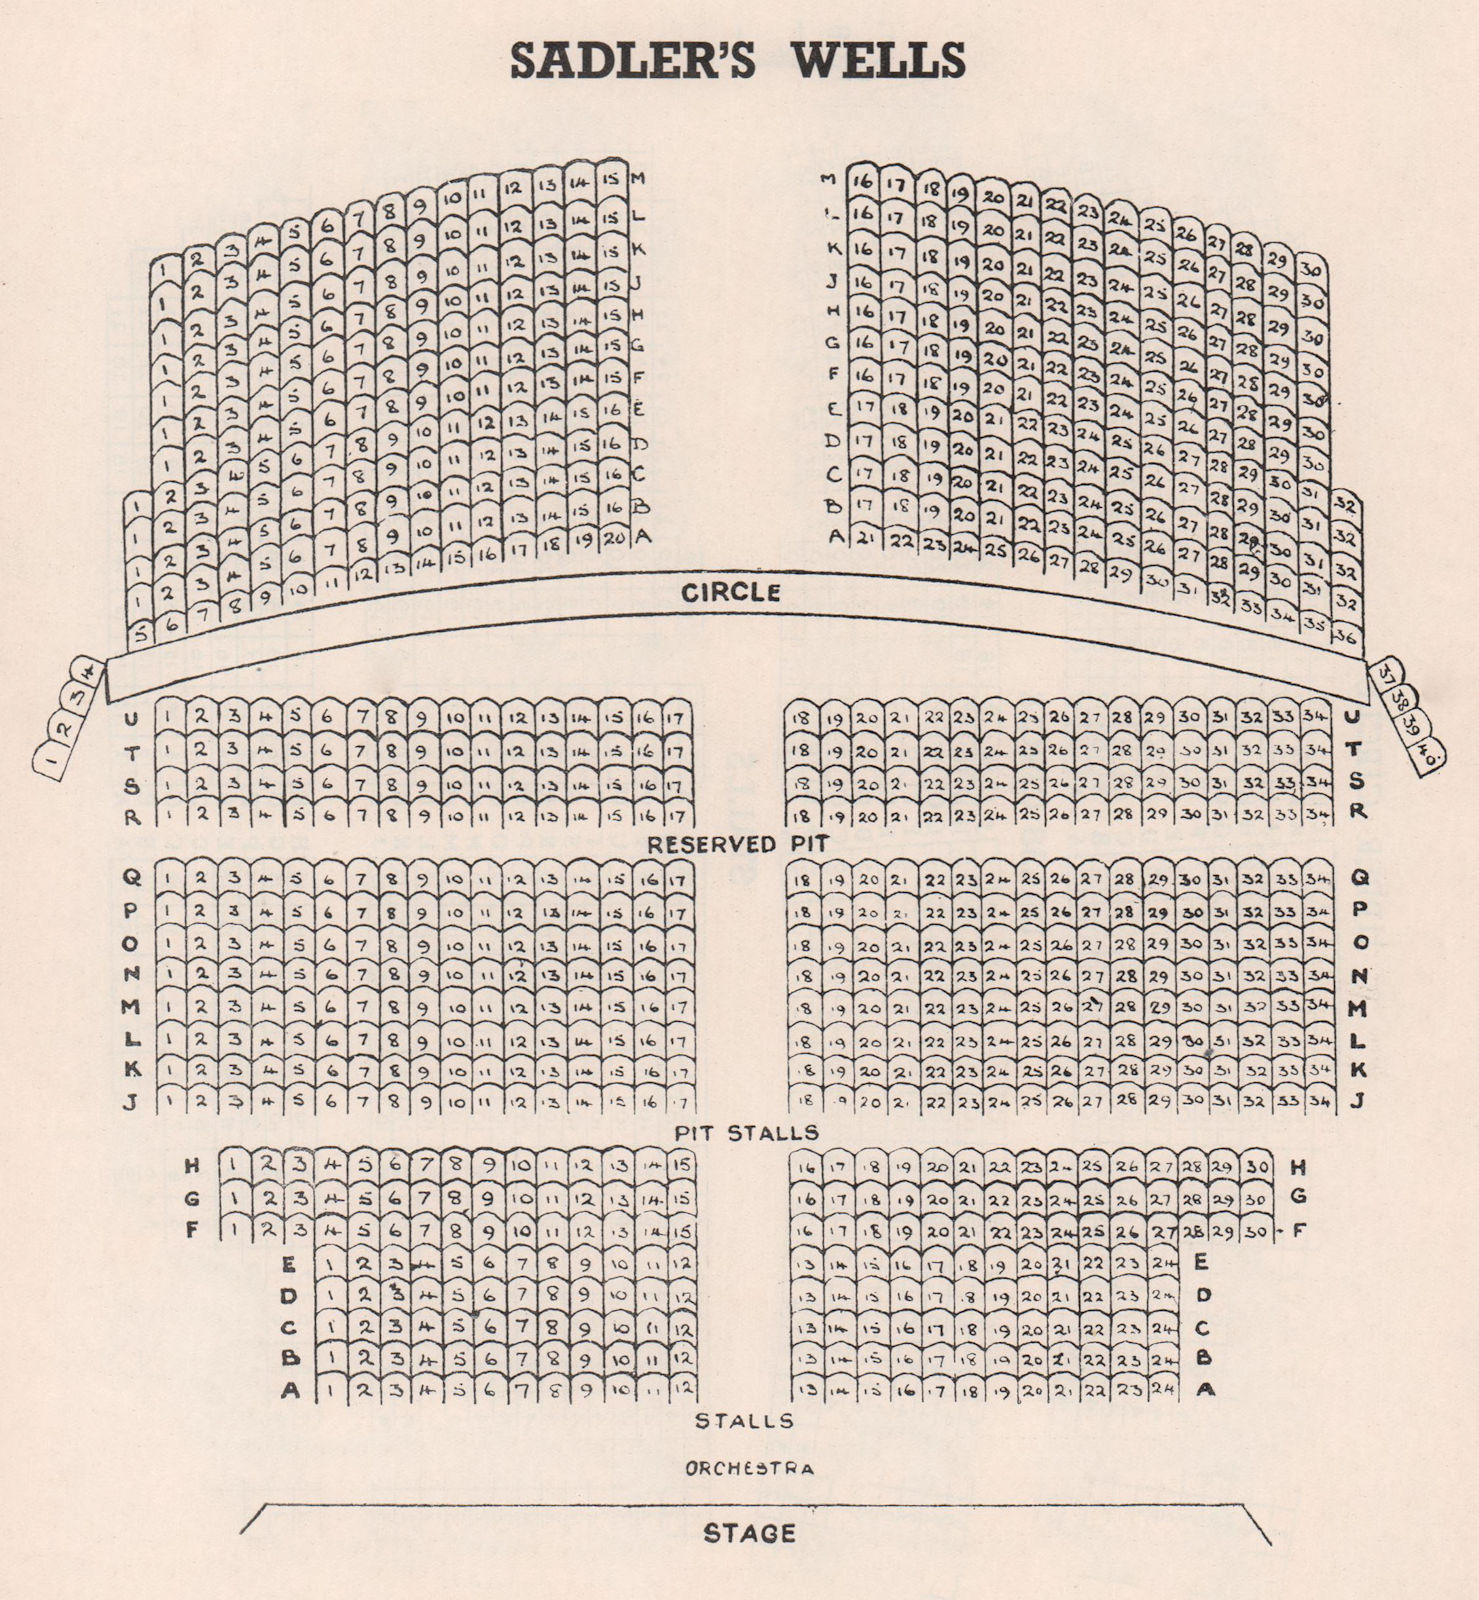 SADLERS WELLS THEATRE vintage seating plan. London West End 1937 old print